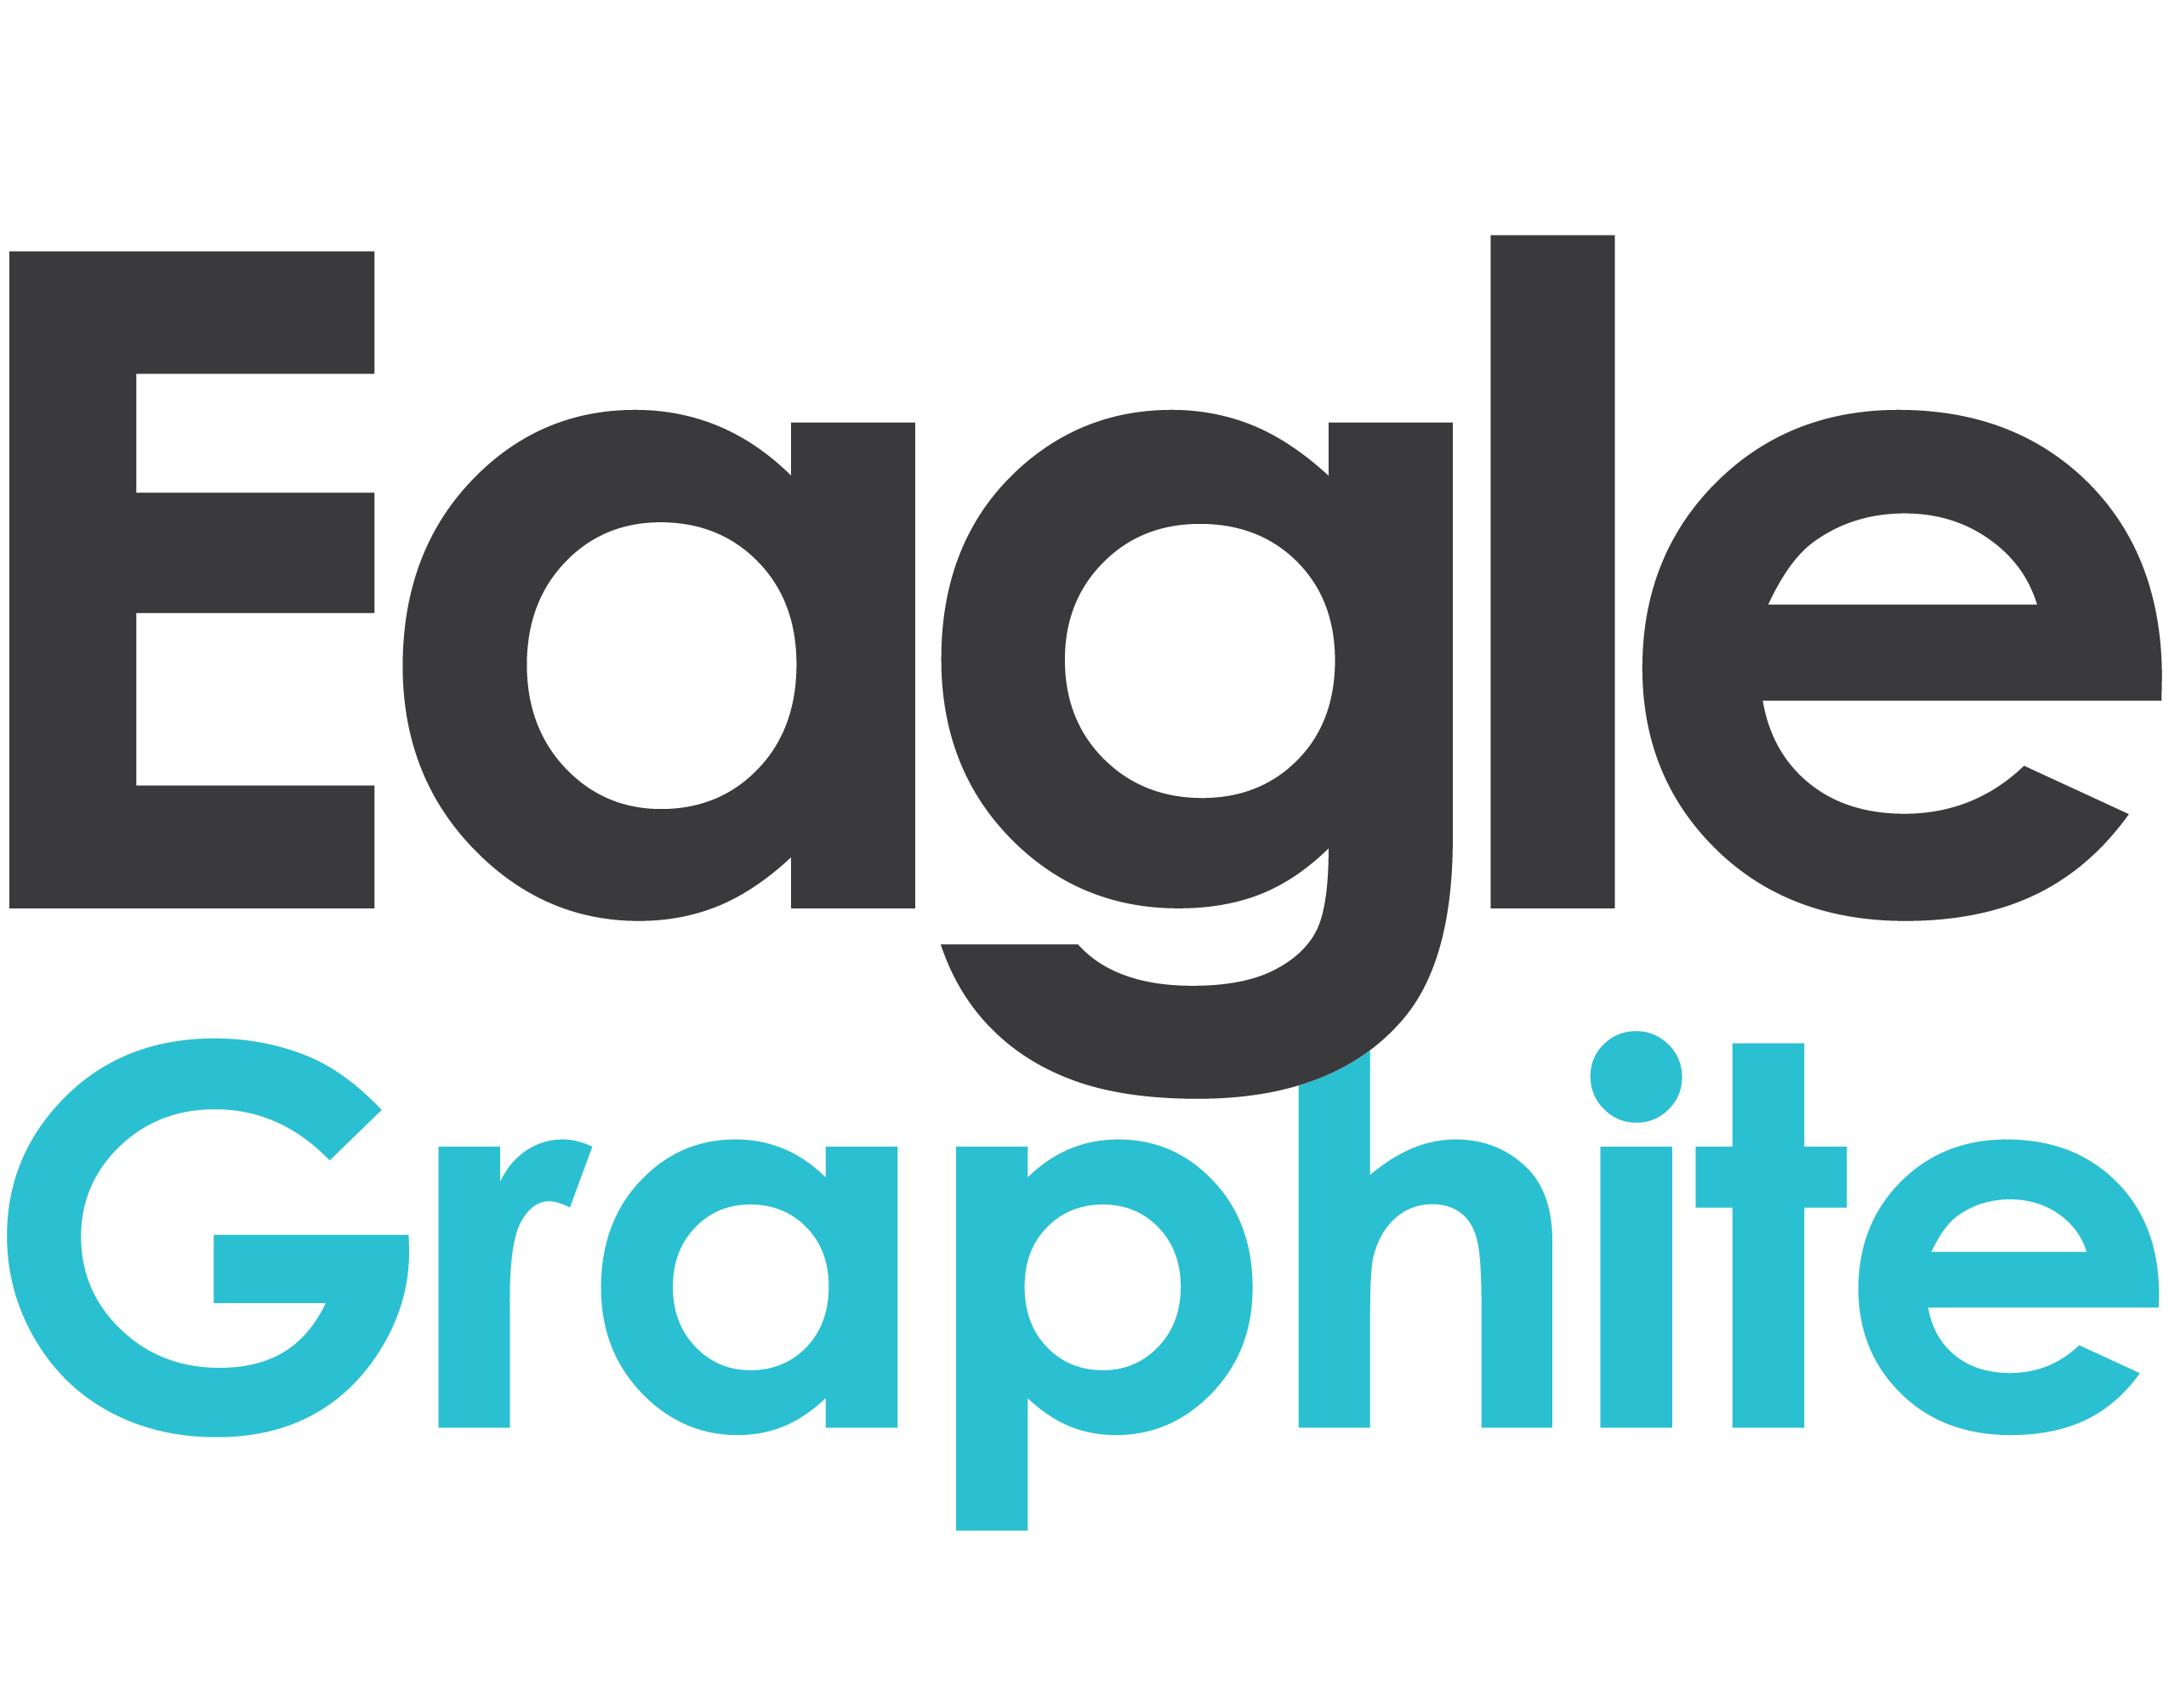 Eagle Graphite